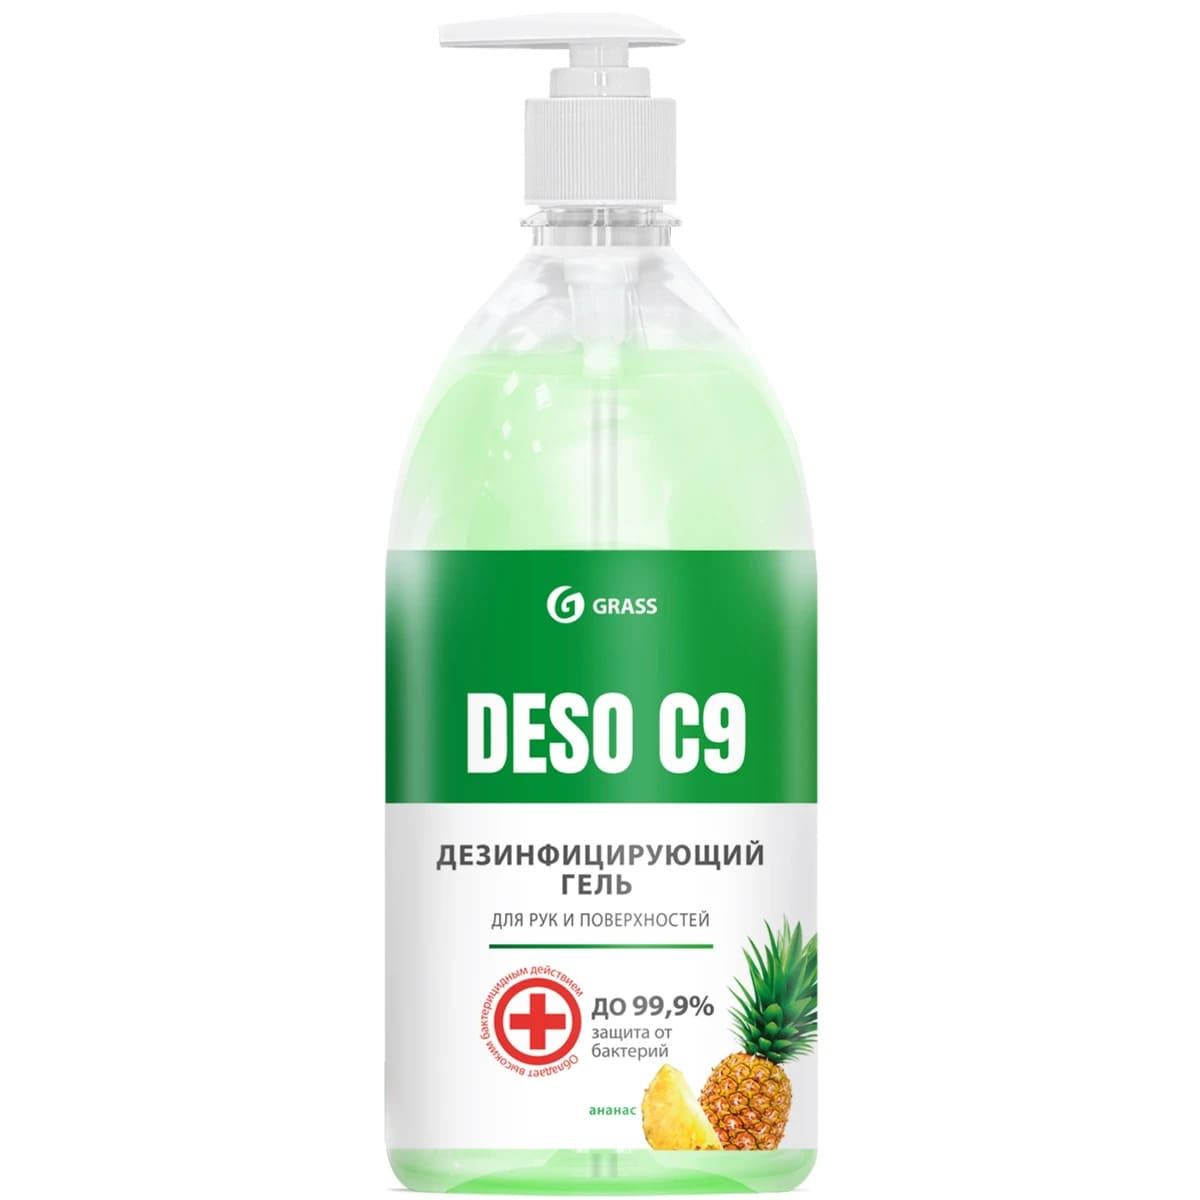 GRASS Дезенфицирующее средство на основе изопропилового спирта DESO 9, 500 ml